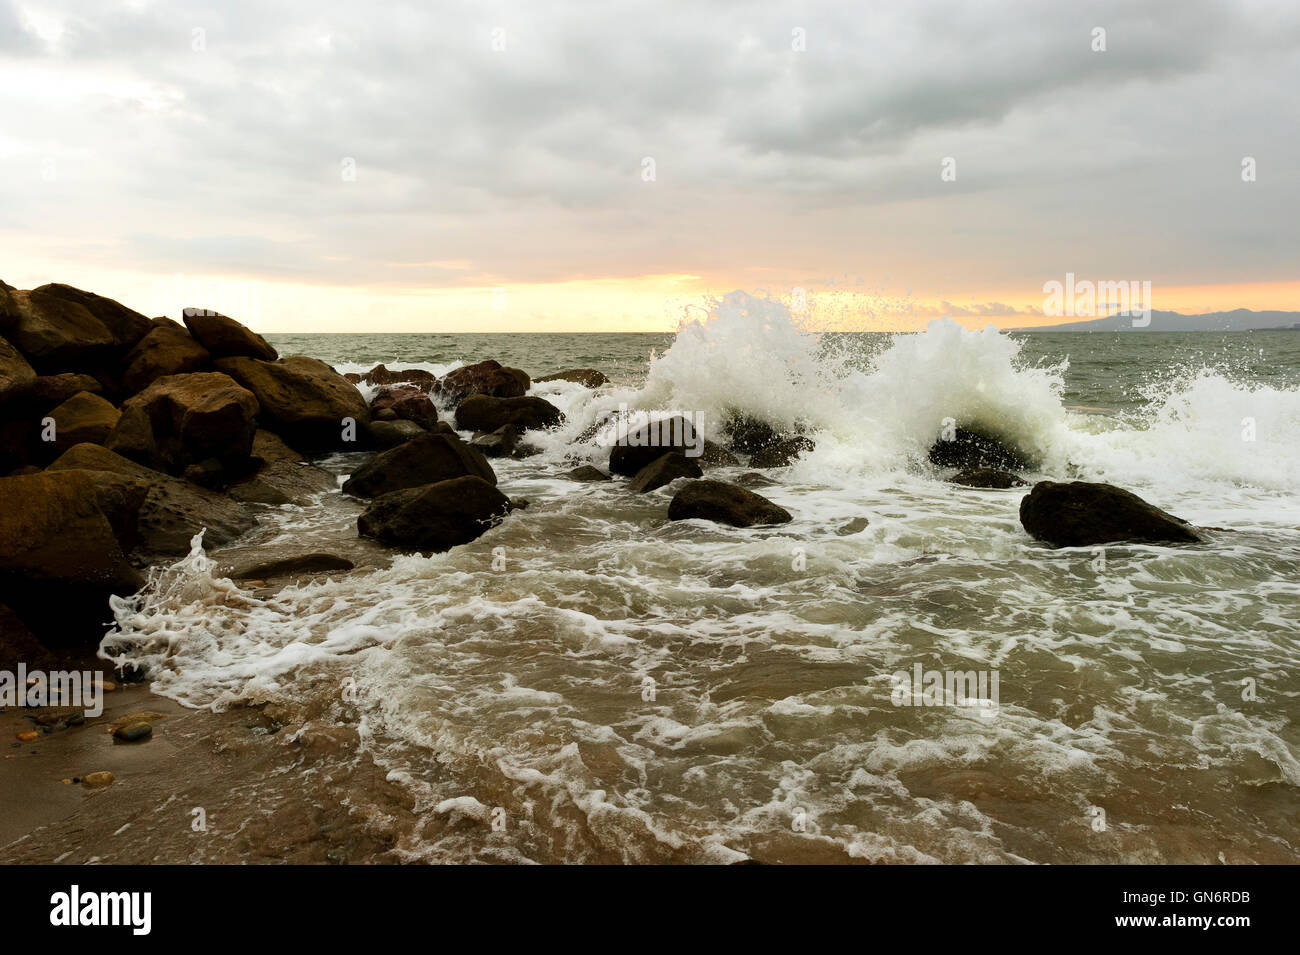 Onde si infrangono è un oceano onda correndo a riva di colpire il mare di rocce e sparare in aria come ocean spray. Foto Stock